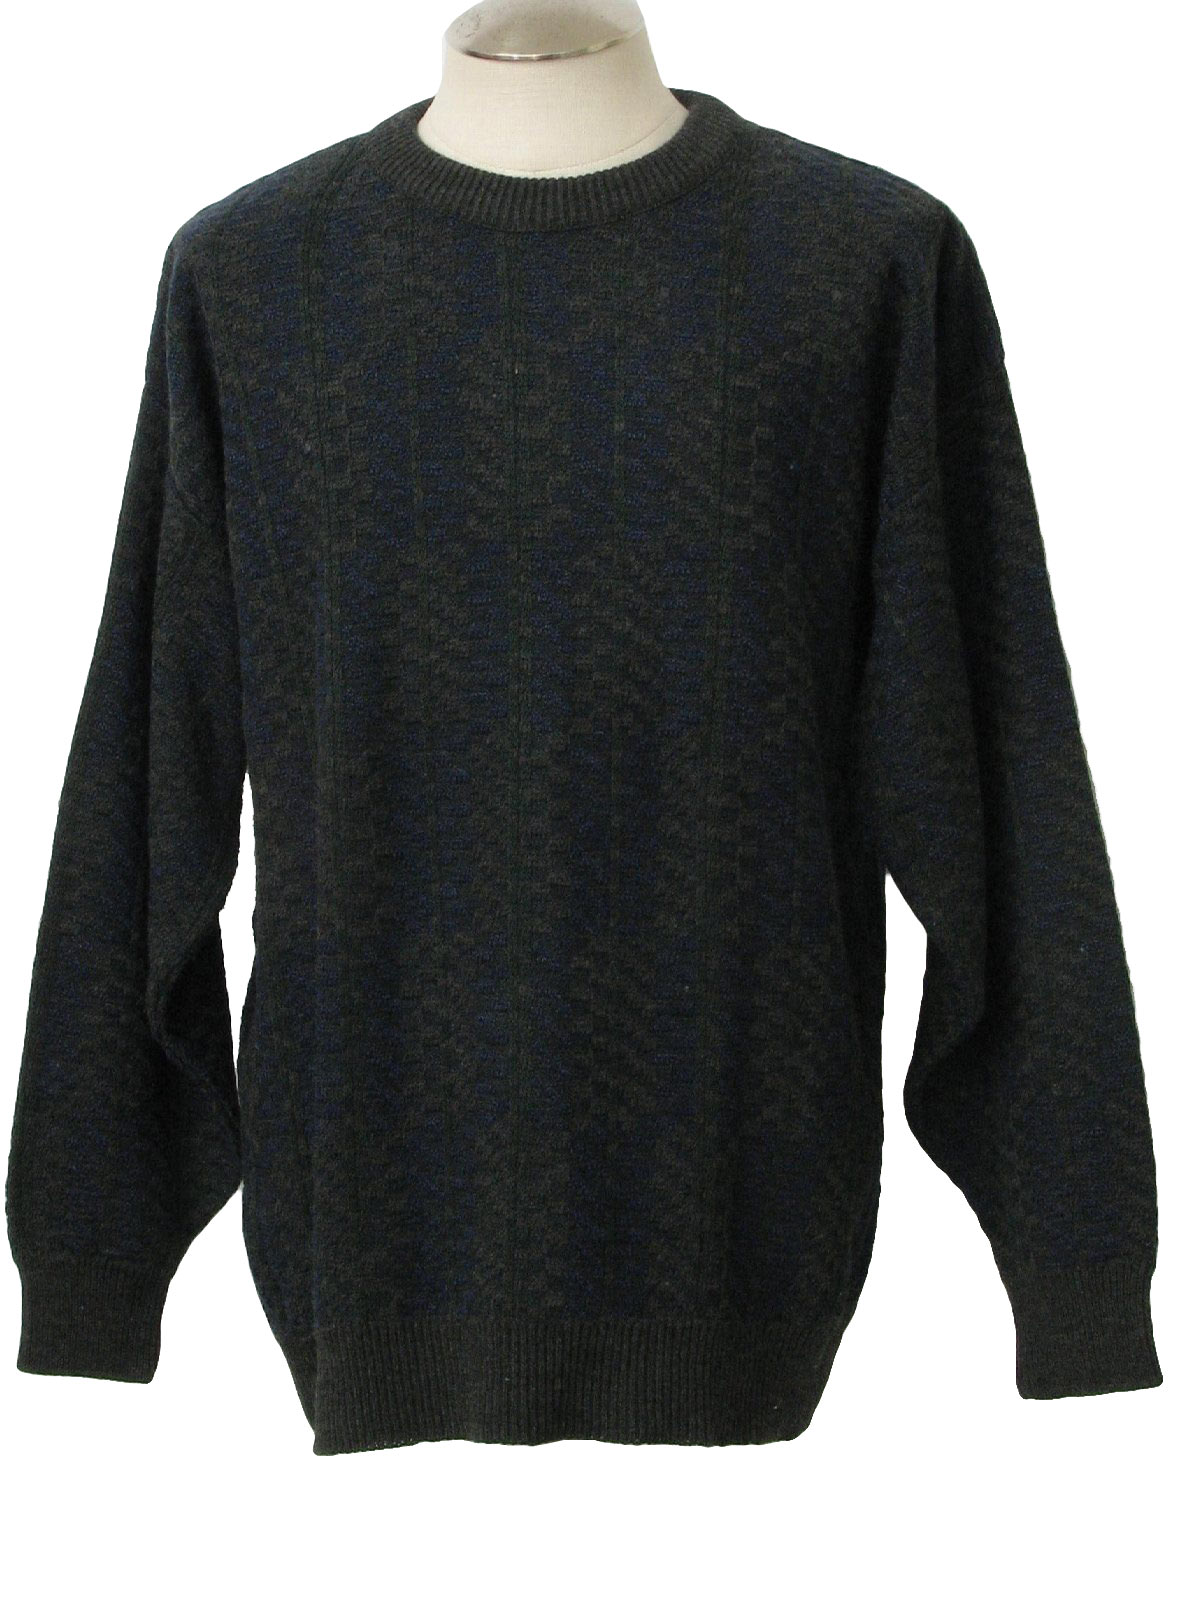 1990's Retro Sweater: 90s -Van Heusen- Mens navy blue, dark grey and ...